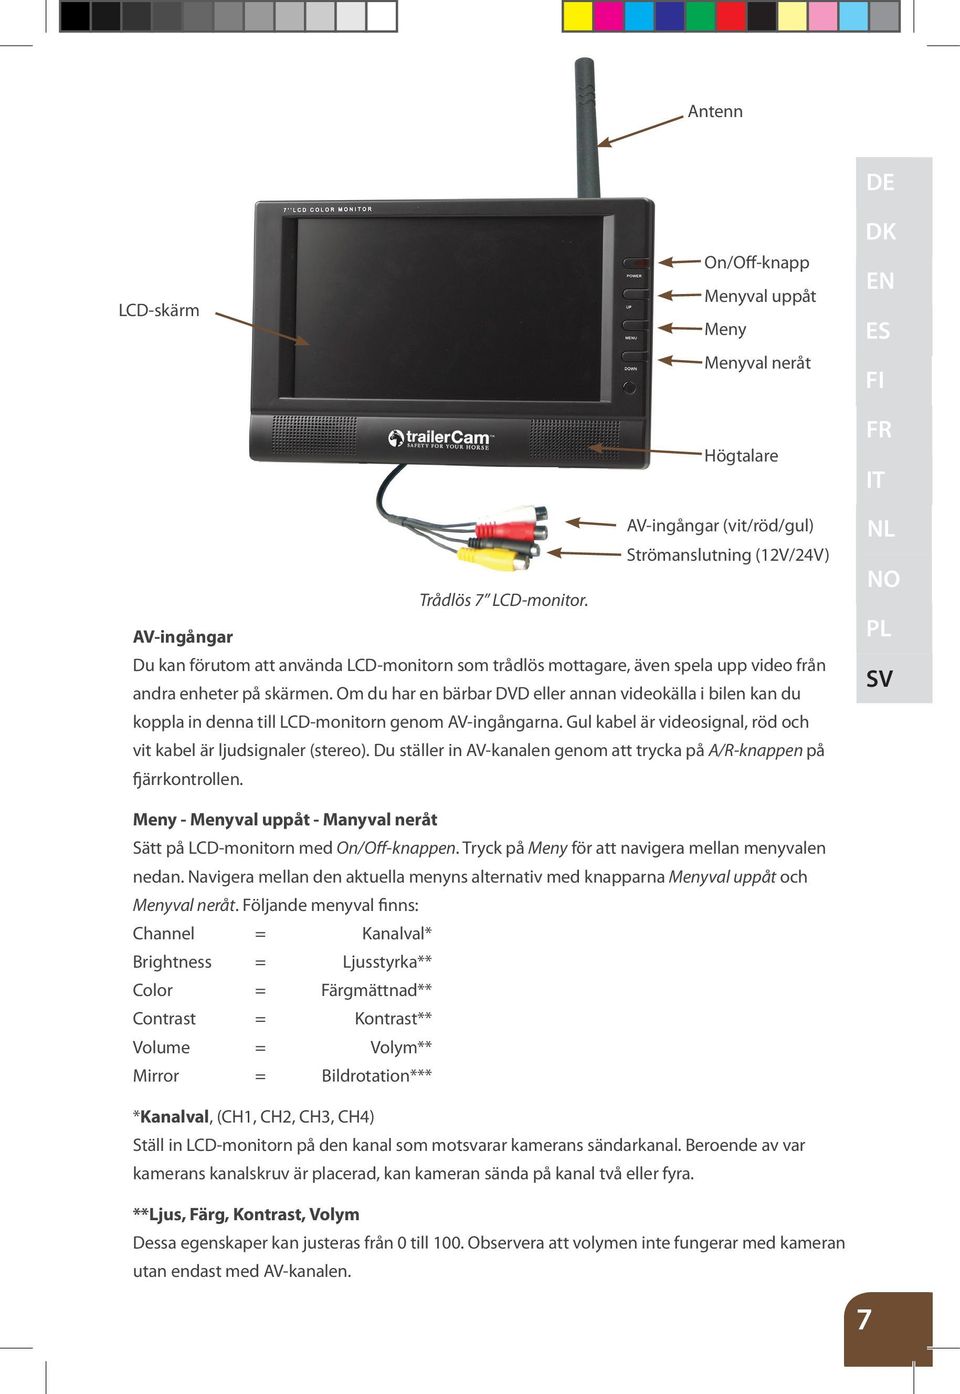 Om du har en bärbar DVD eller annan videokälla i bilen kan du koppla in denna till LCD-monitorn genom AV-ingångarna. Gul kabel är videosignal, röd och vit kabel är ljudsignaler (stereo).